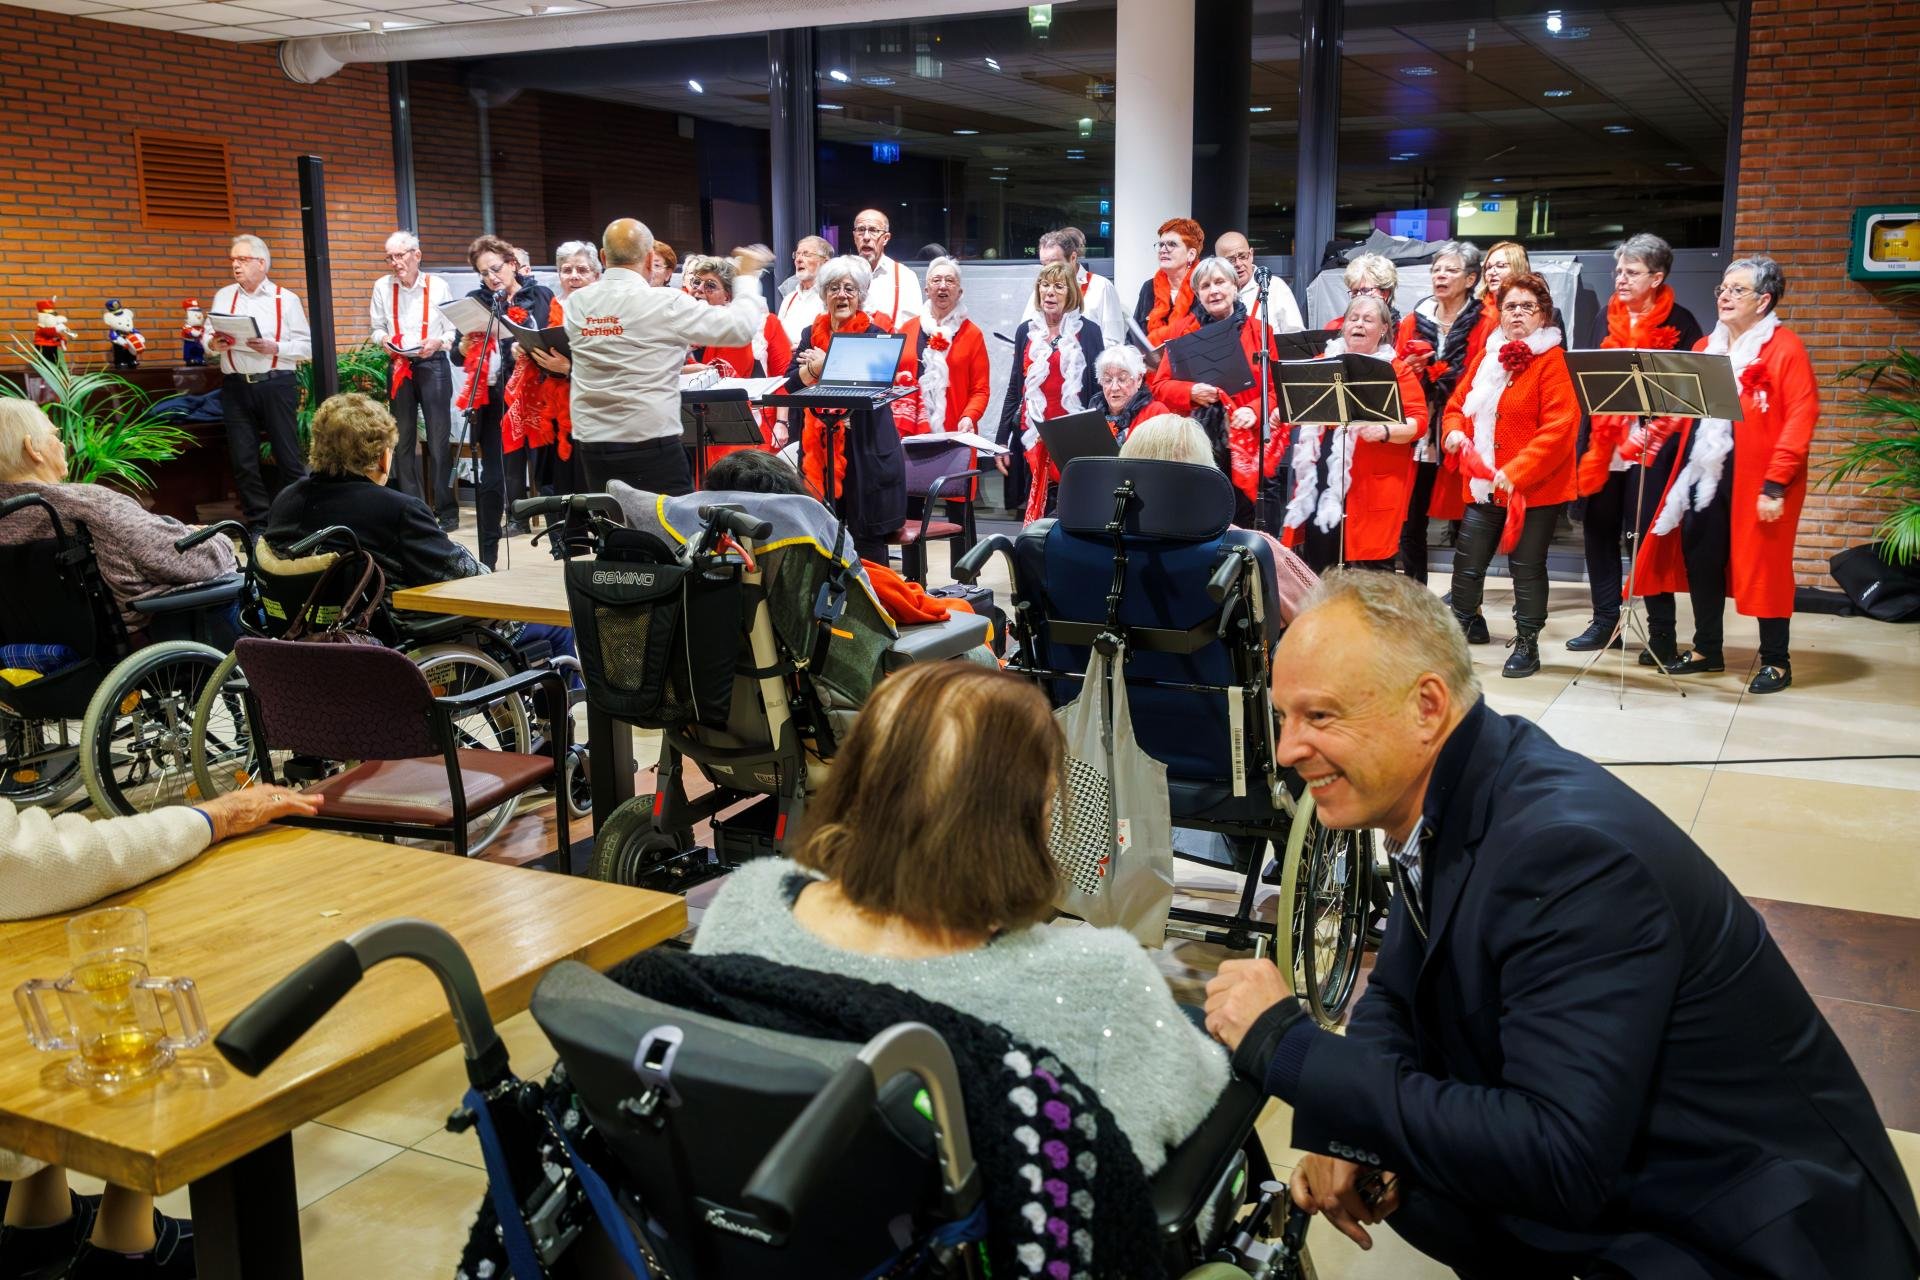 Op achtergrond koor in rood en wit. Oudere mensen in rolstoel luisteren op de rug gezien, behalve wethouder Dijkstra, hij luister met bewoner verzorgingstehuis mee